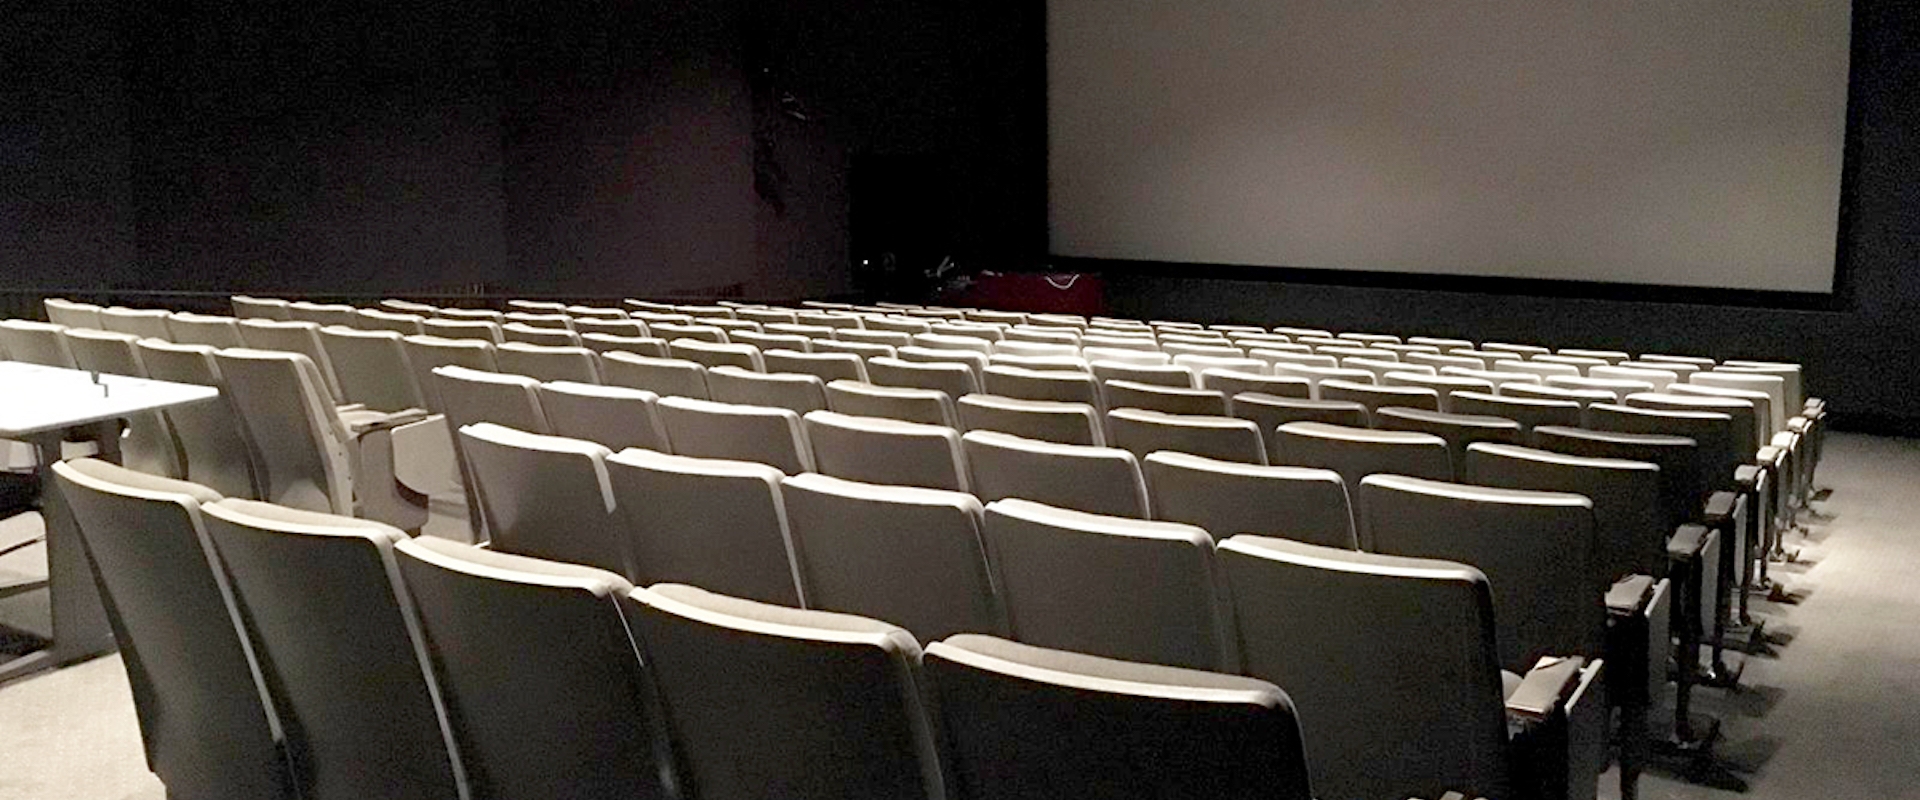 Coppola Theatre empty seats and screen